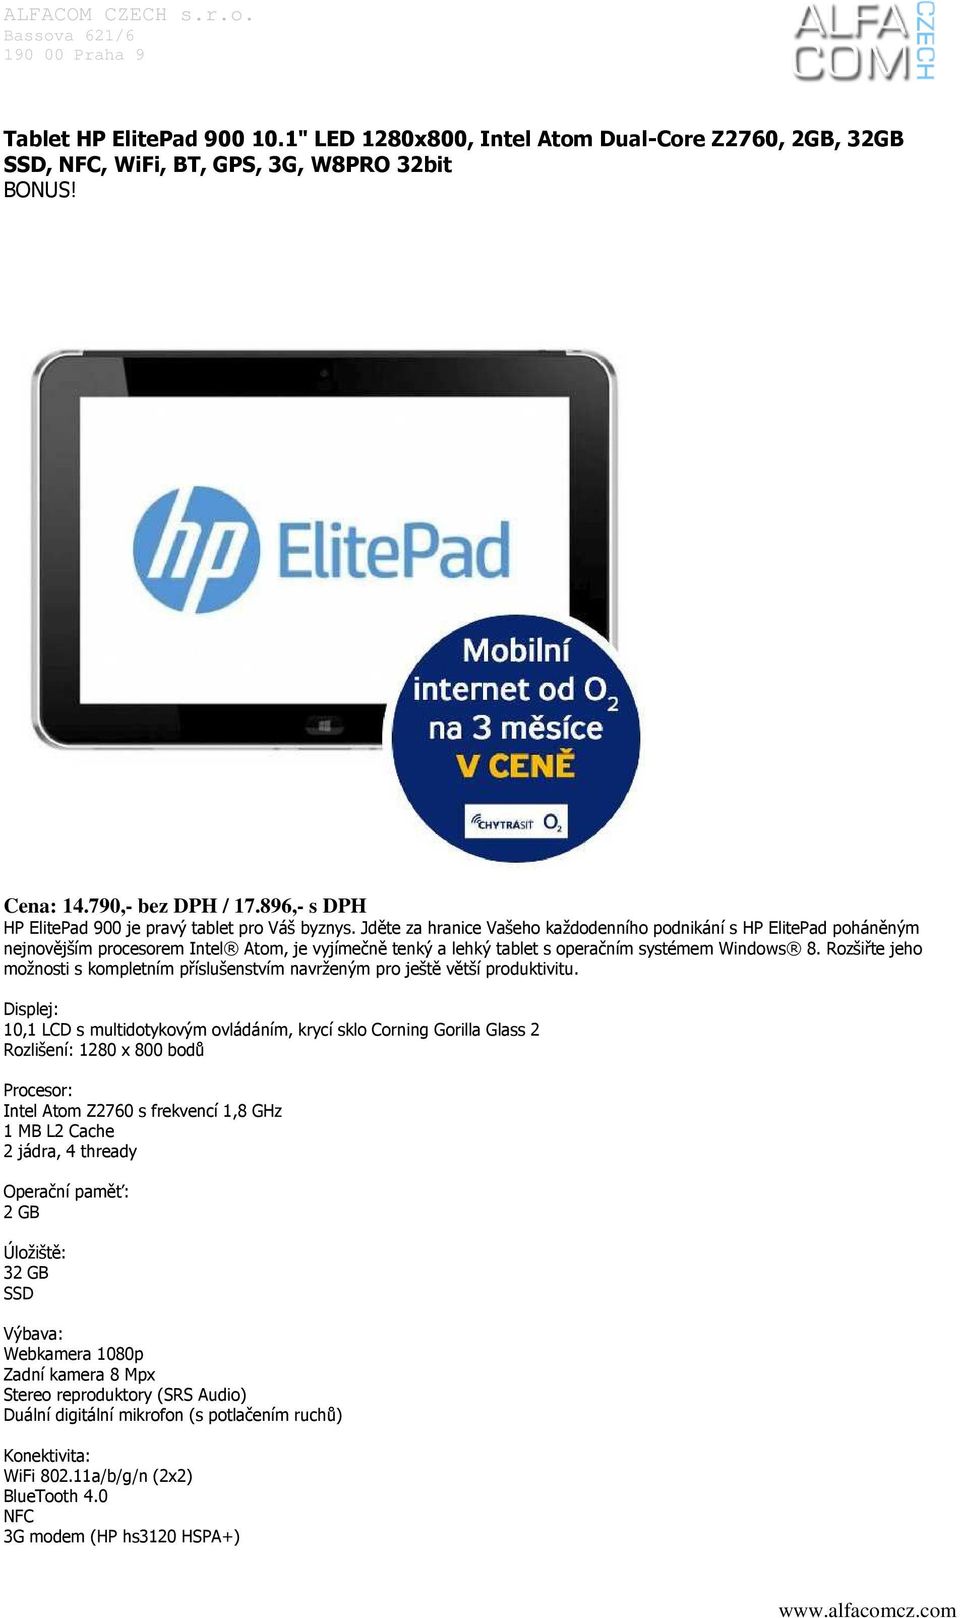 Jděte za hranice Vašeho každodenního podnikání s HP ElitePad poháněným nejnovějším procesorem Intel Atom, je vyjímečně tenký a lehký tablet s operačním systémem Windows 8.